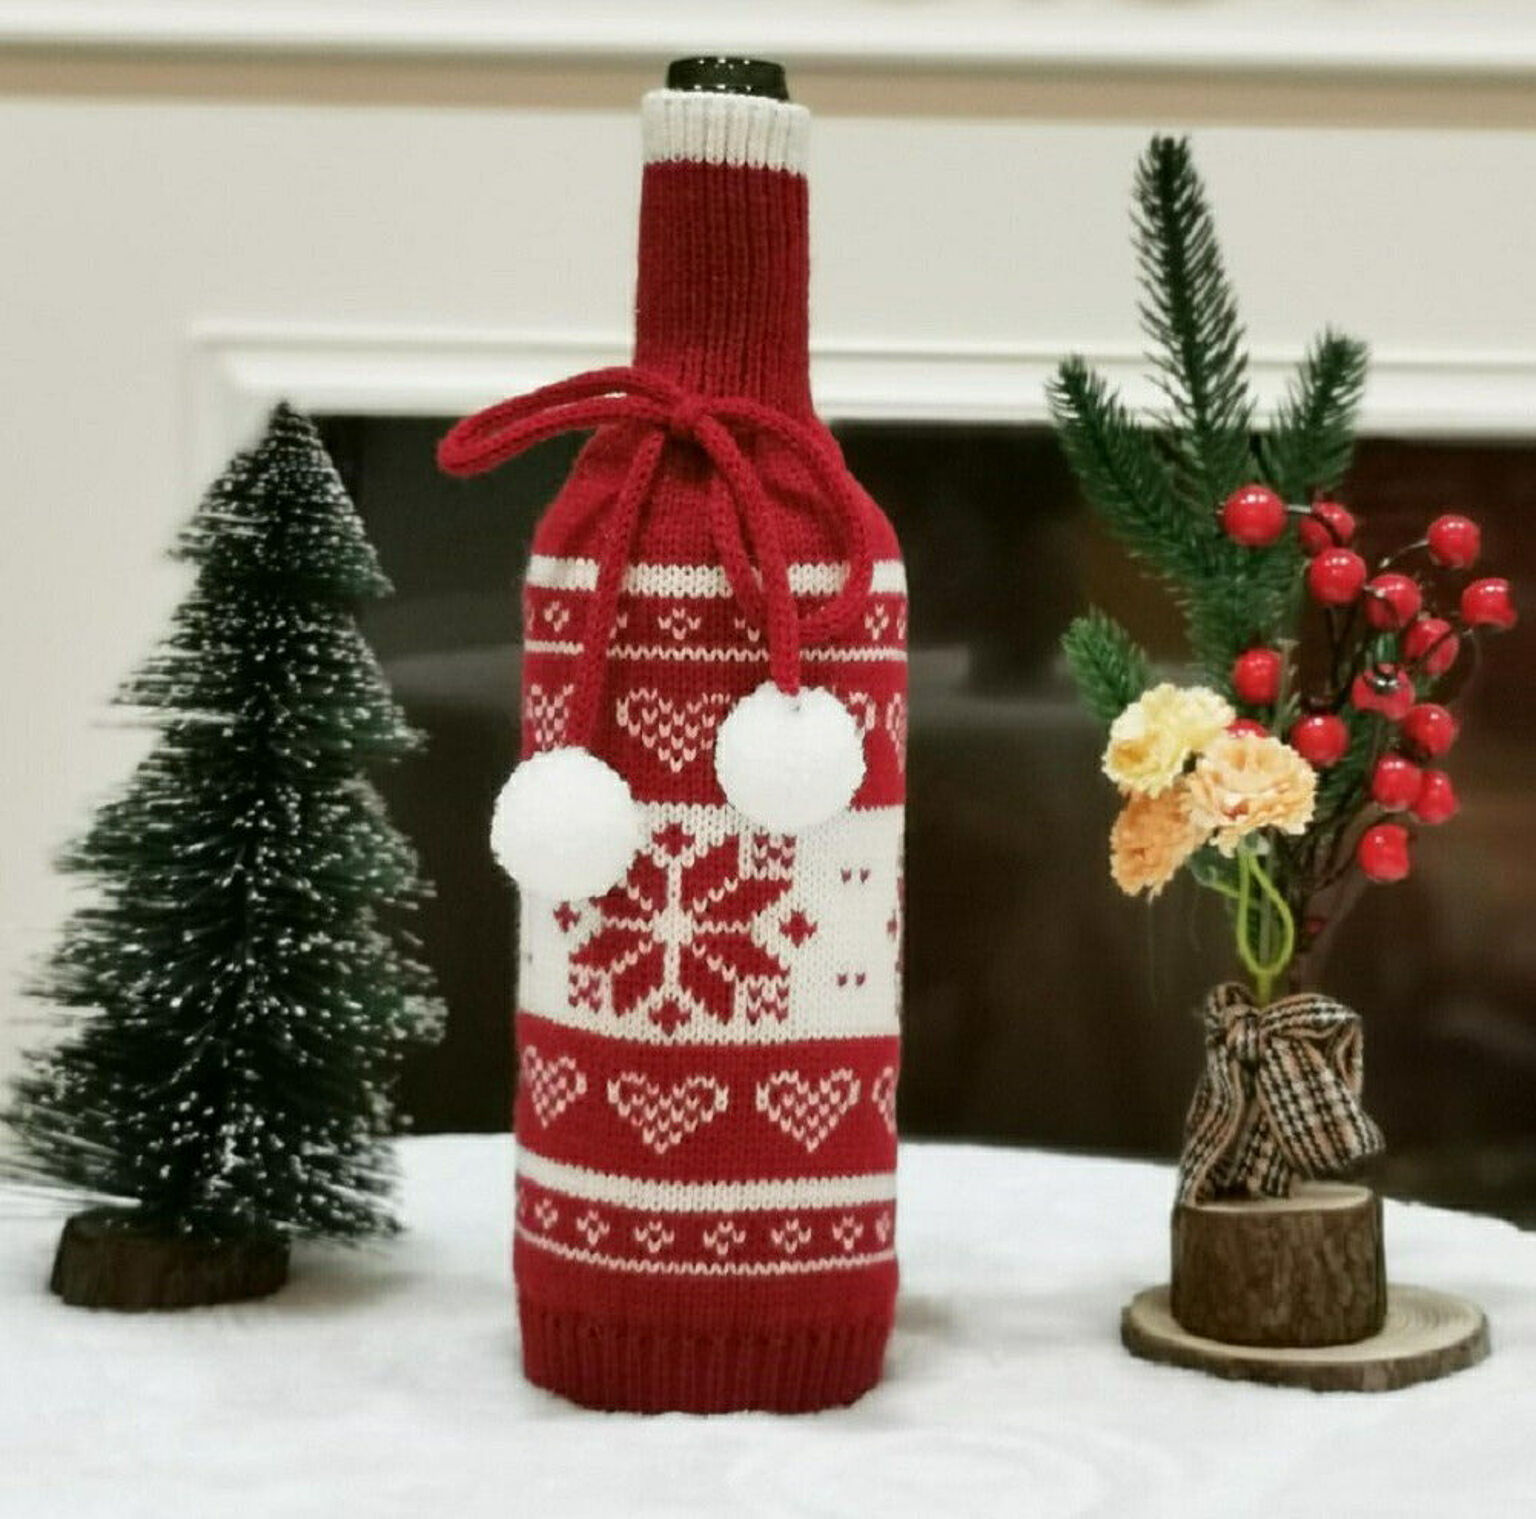 在庫限り ワインボトルカバー 雪の結晶 ニット クリスマスデコレーション サンタクロース スノーマン ワイン